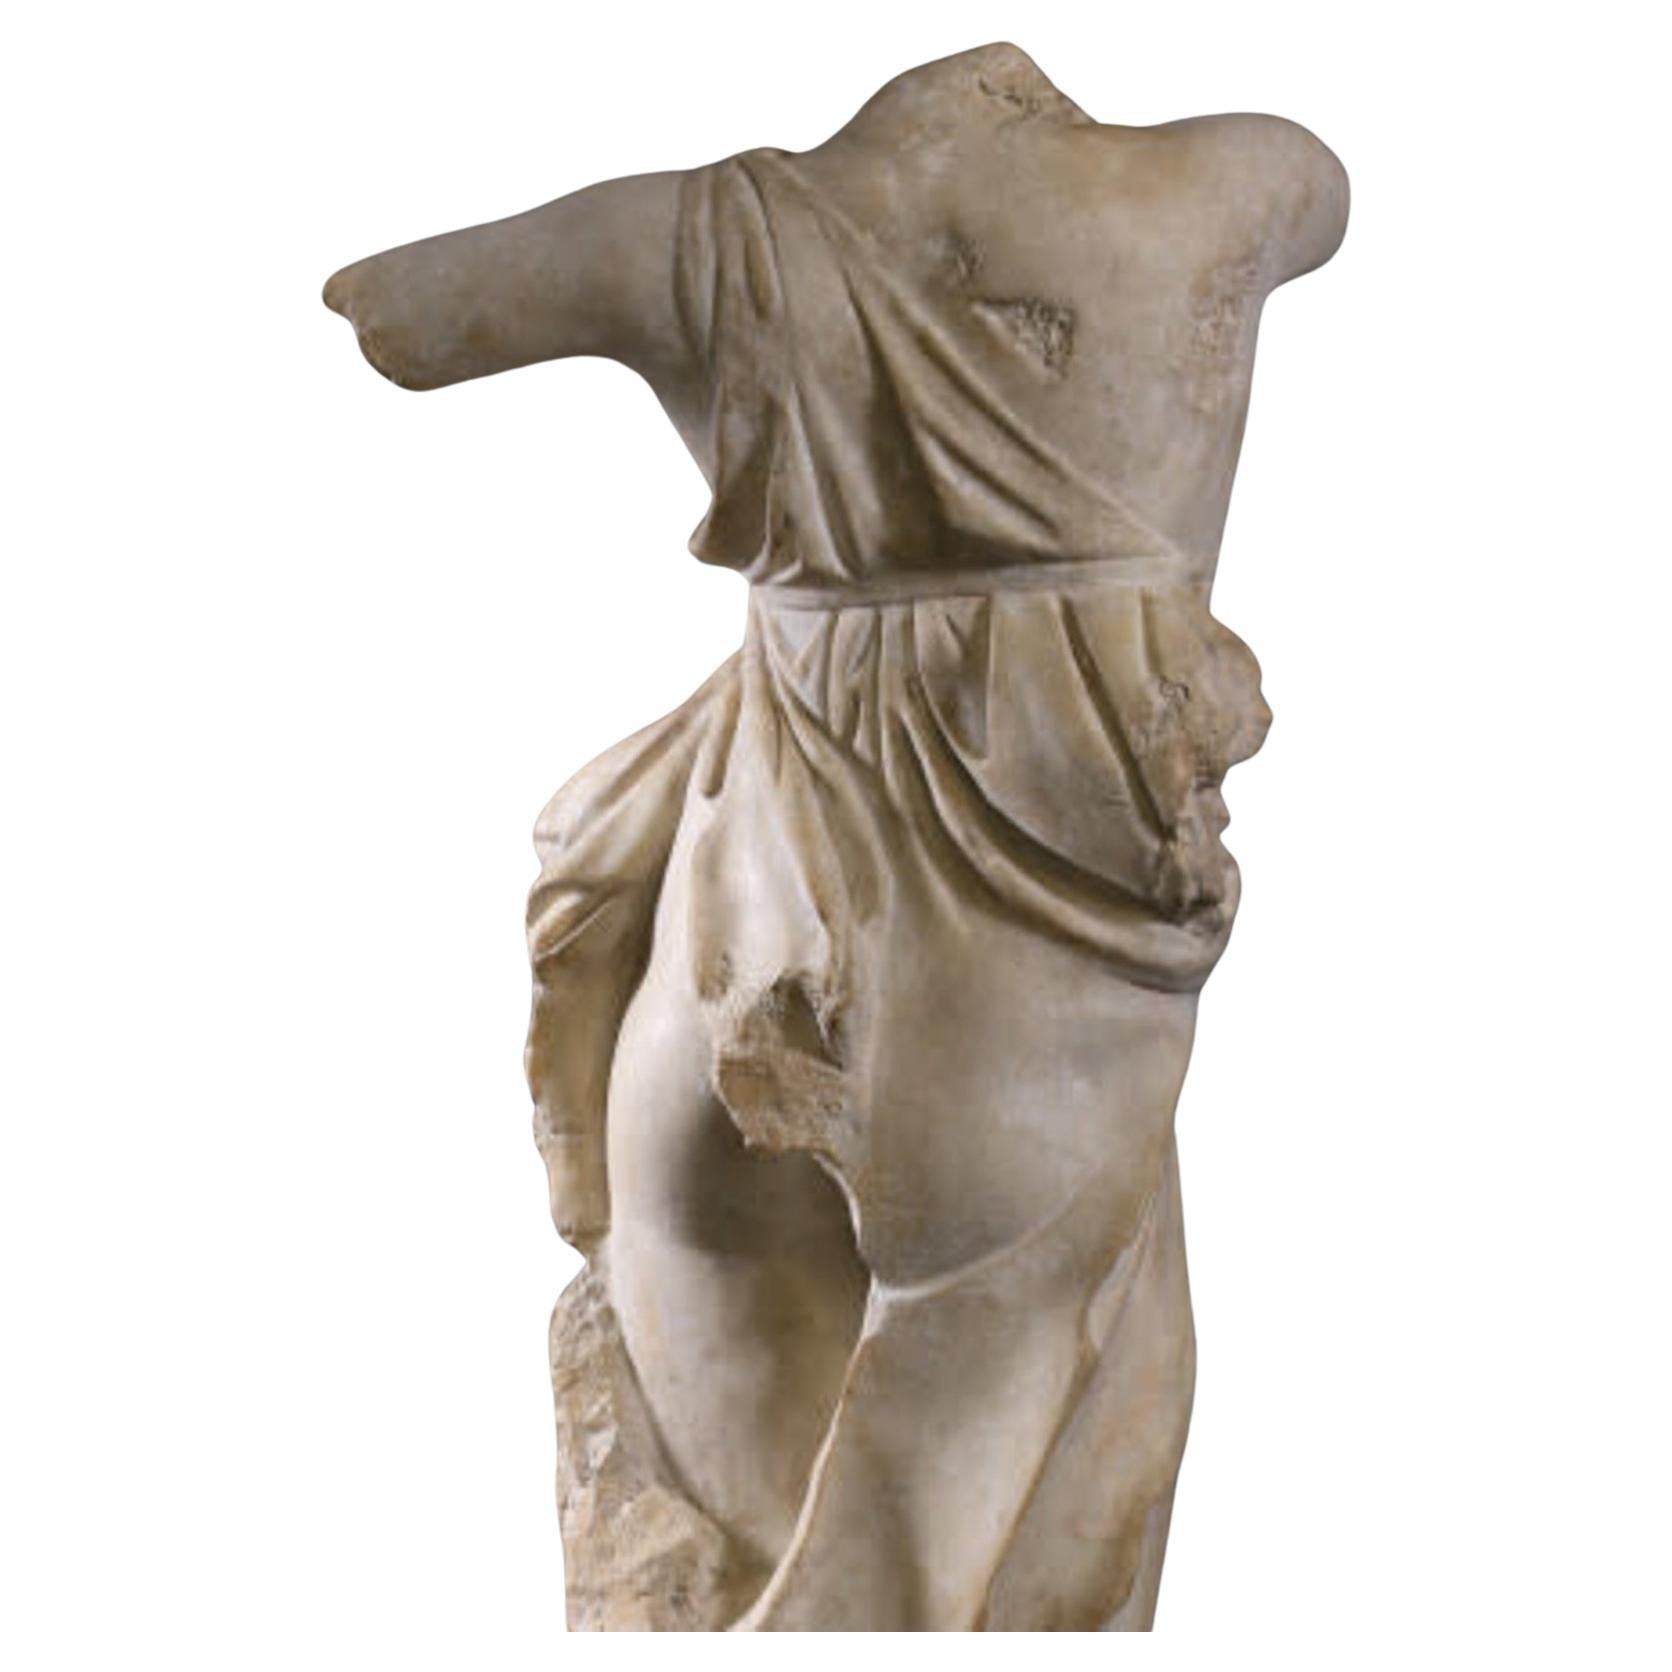 Ce buste de danseuse de Tivoli est un fragment d'une statue originale datant probablement du IVe siècle avant J.-C. et conservée au musée archéologique de Rome.
Cette somptueuse sculpture décorative de grande taille est finement réalisée avec une